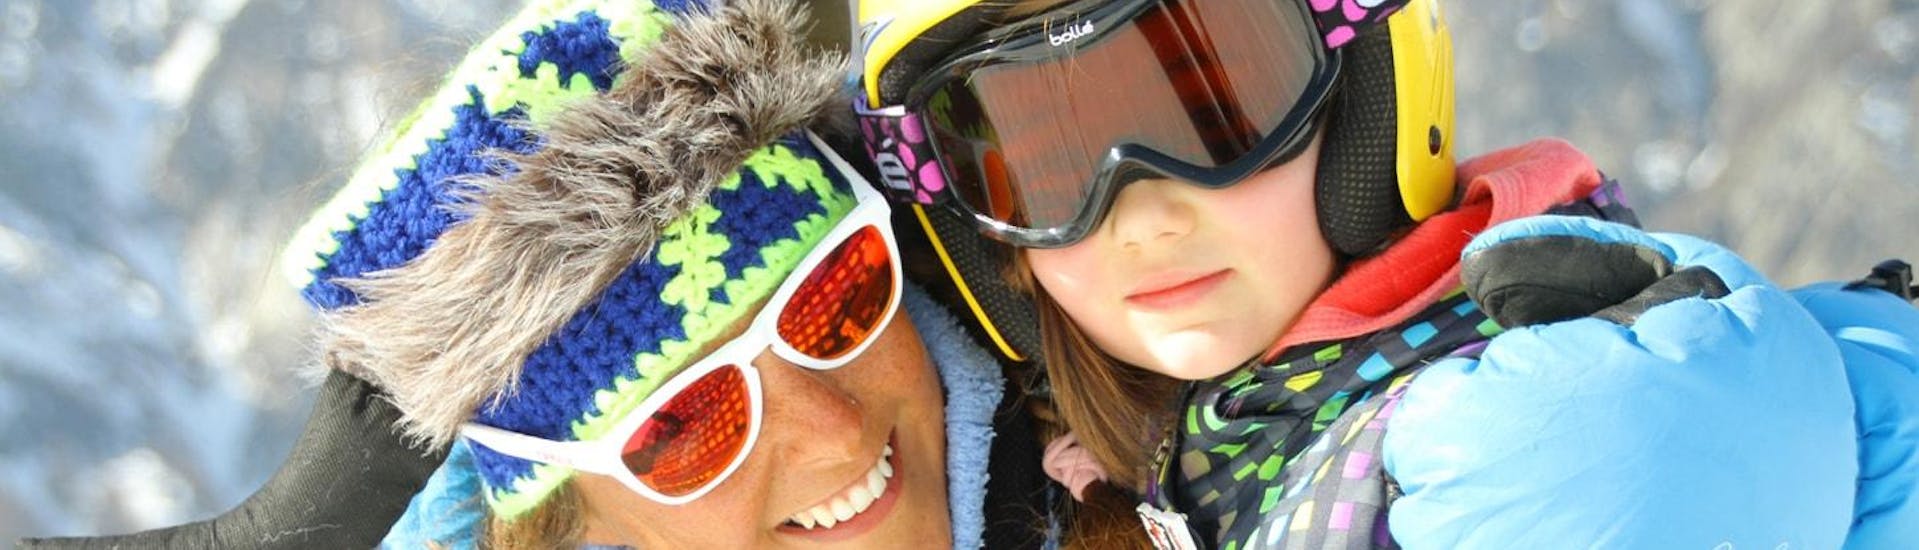 Clases de esquí para niños a partir de 4 años para principiantes.